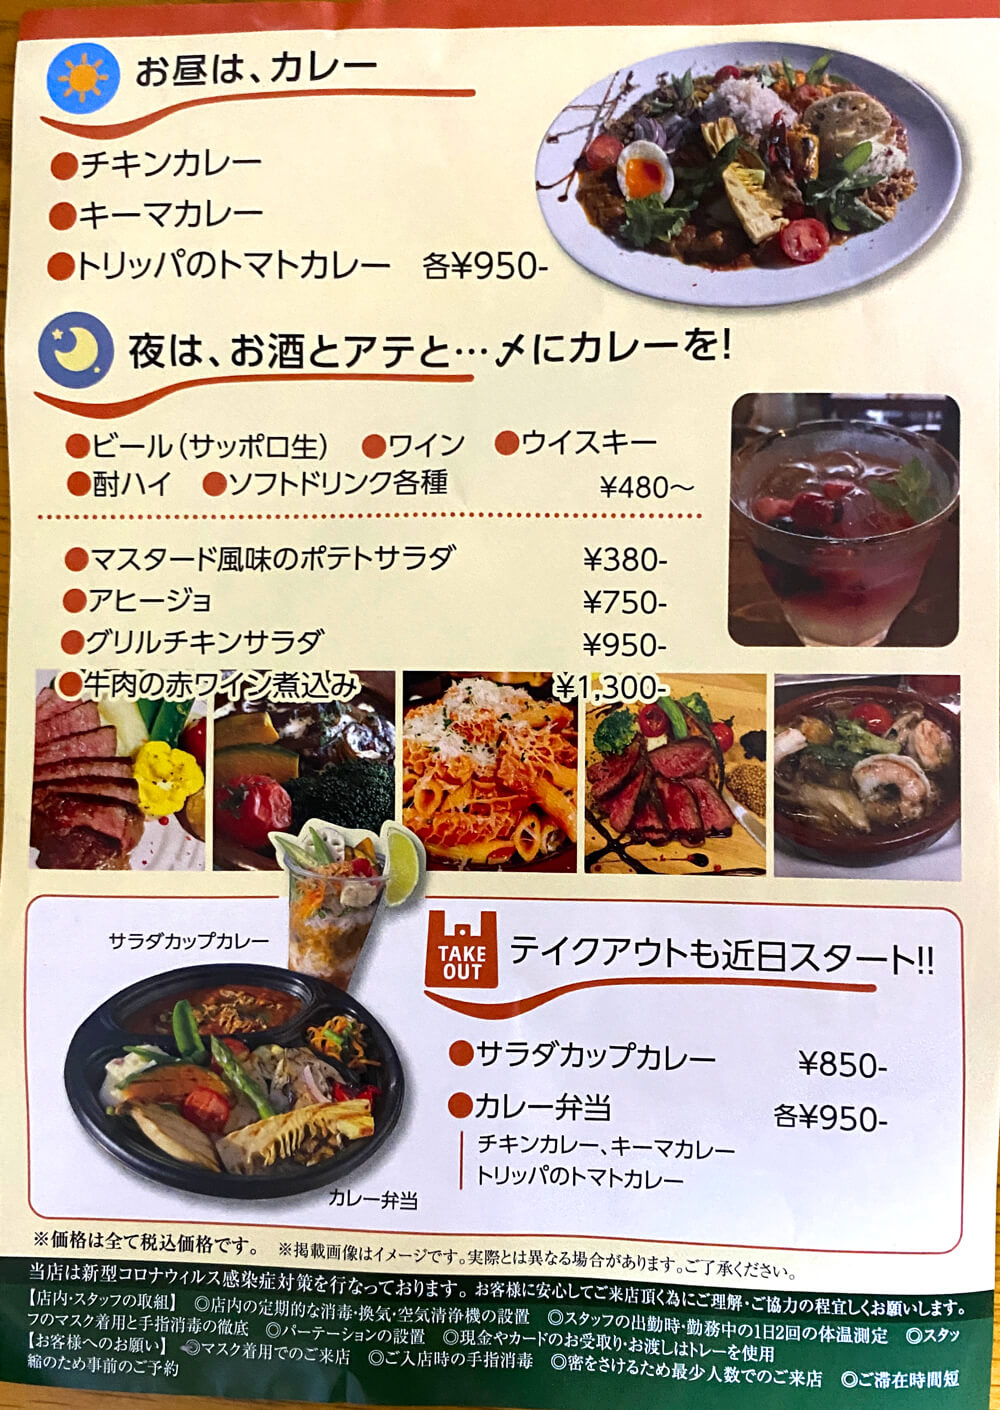 【2022年3月26日】スパイスカレーと酒とアテ「マハナ食堂」が、大阪狭山市駅前にオープン-(15)